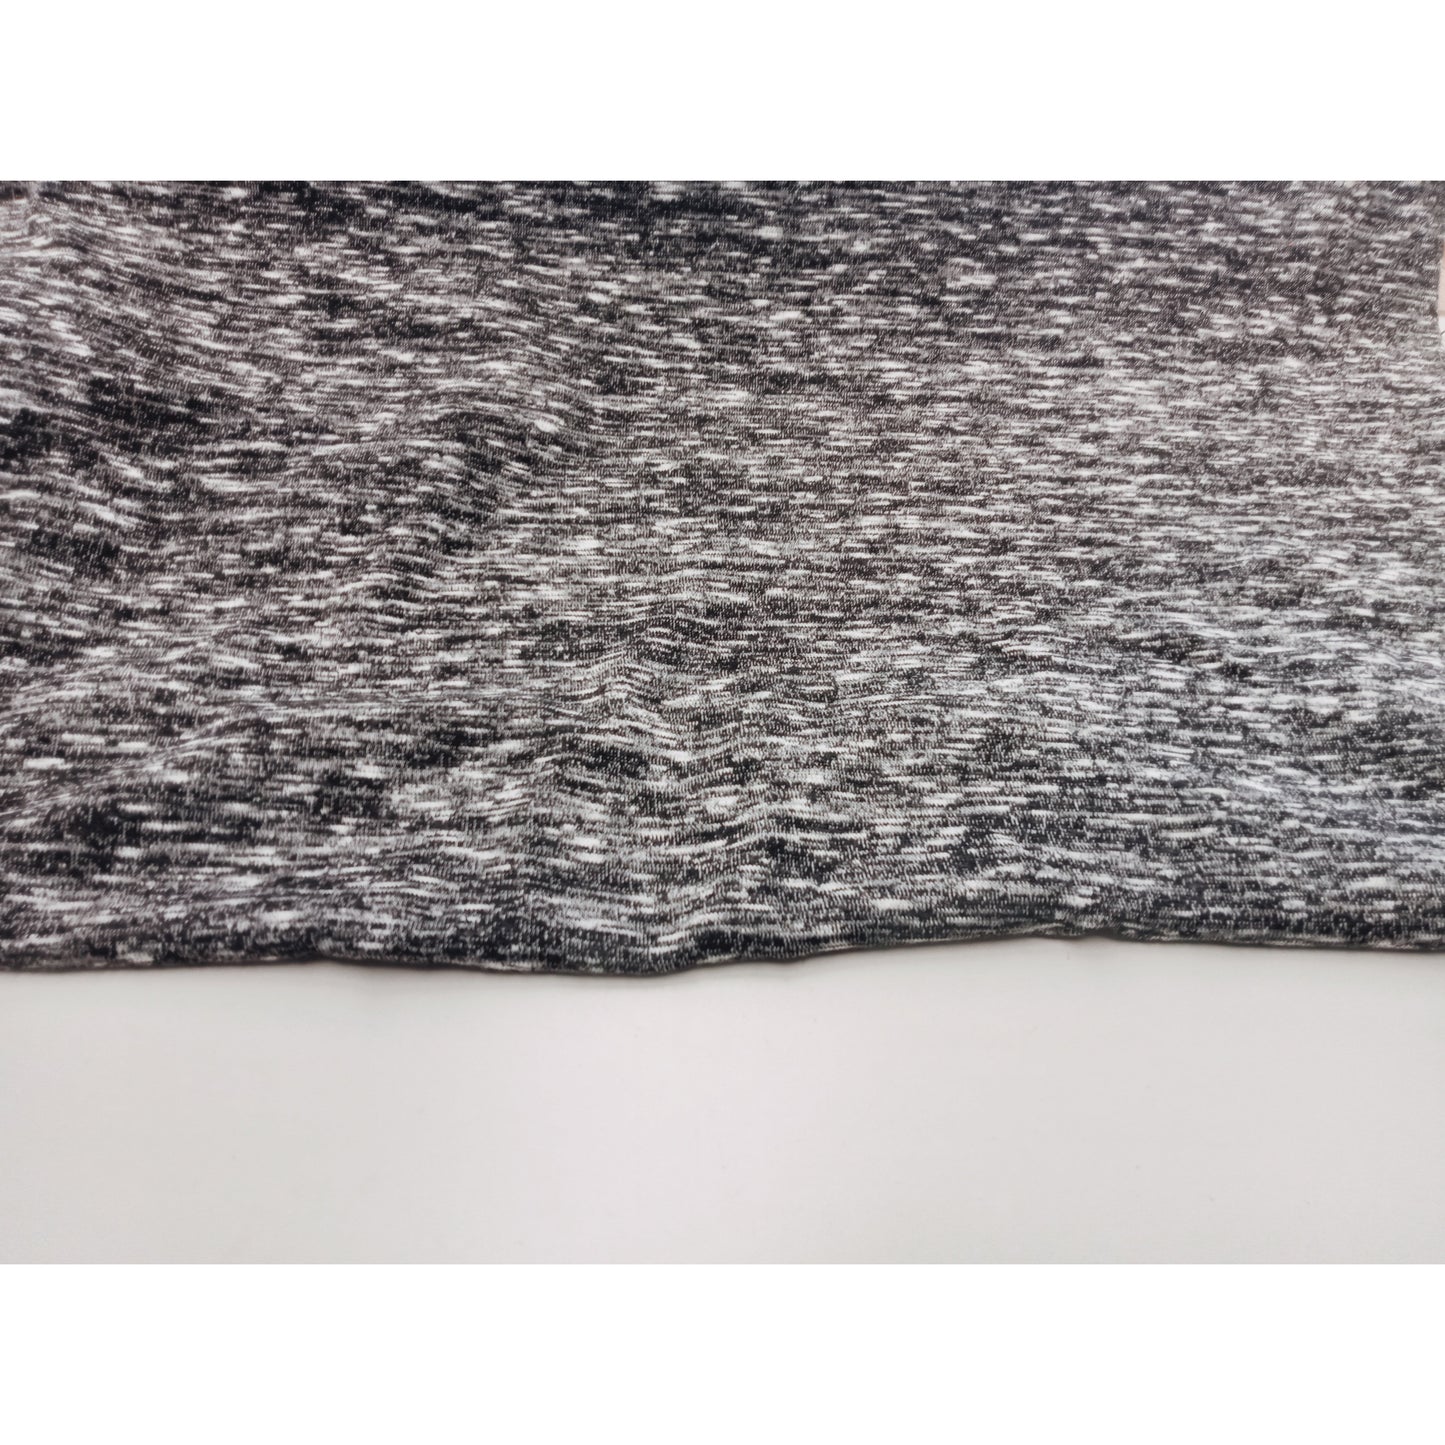 Beautiful marle knit fabric - charcoal/white